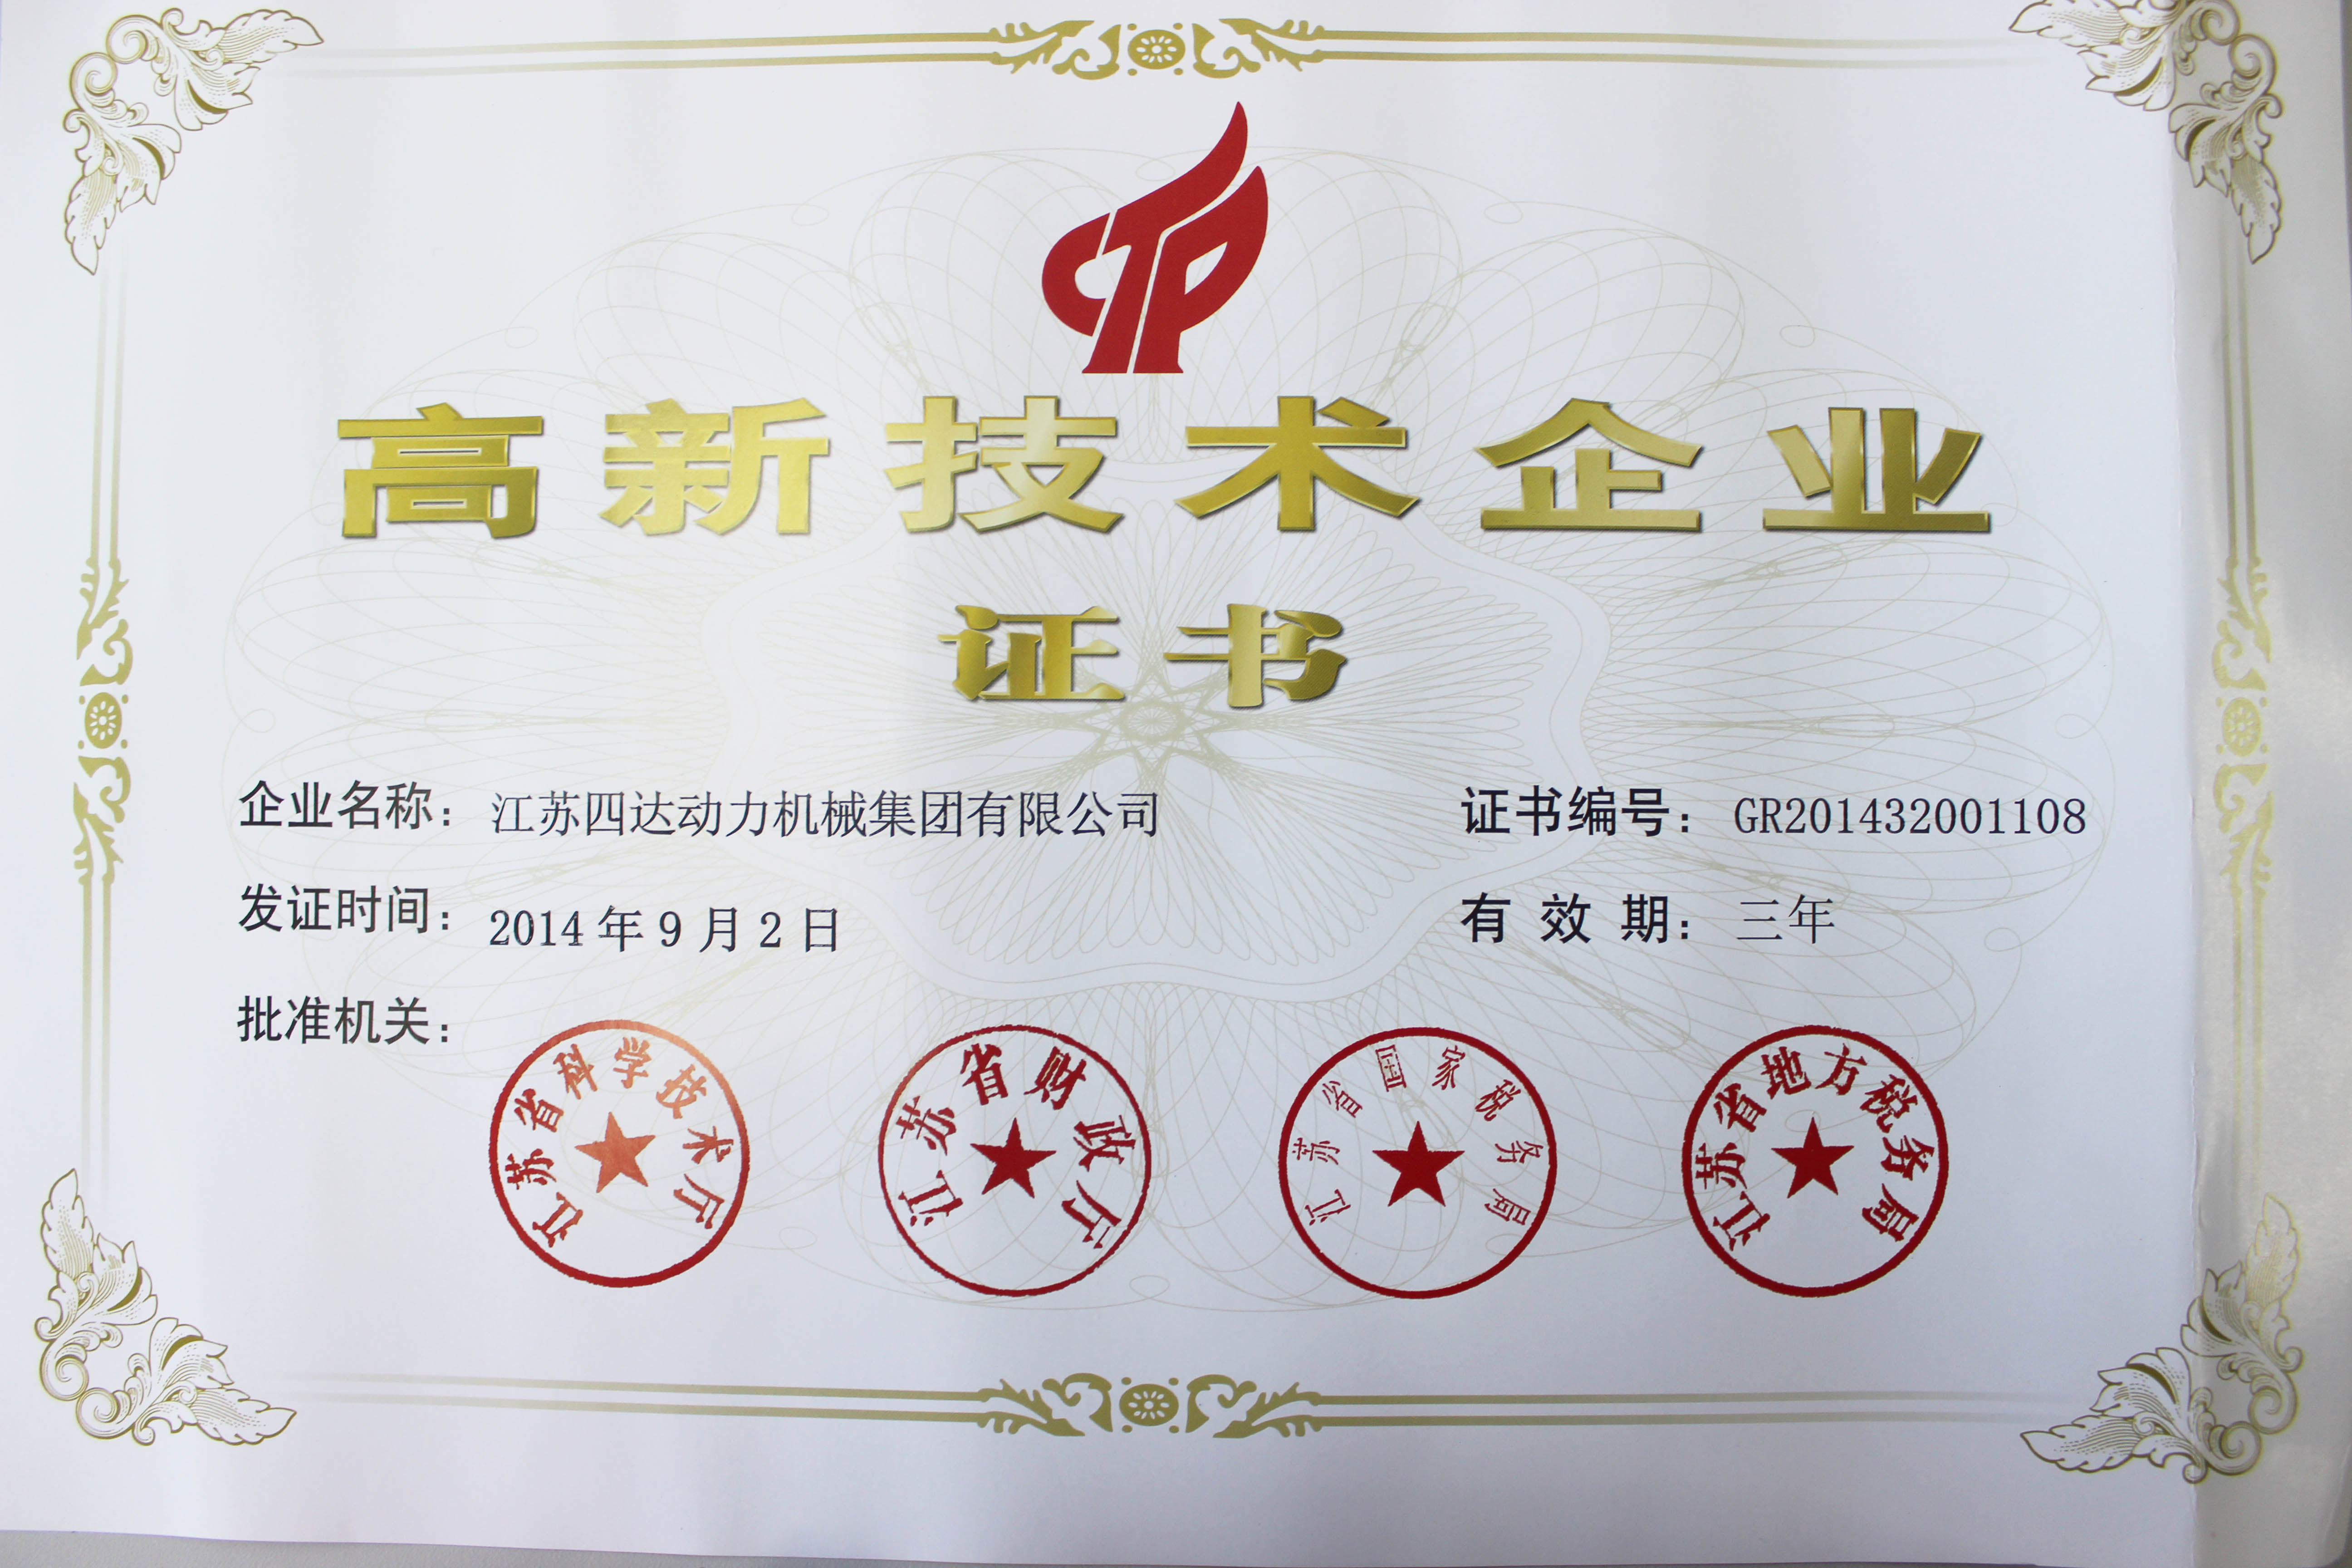 四达被评为江苏省高新技术企业